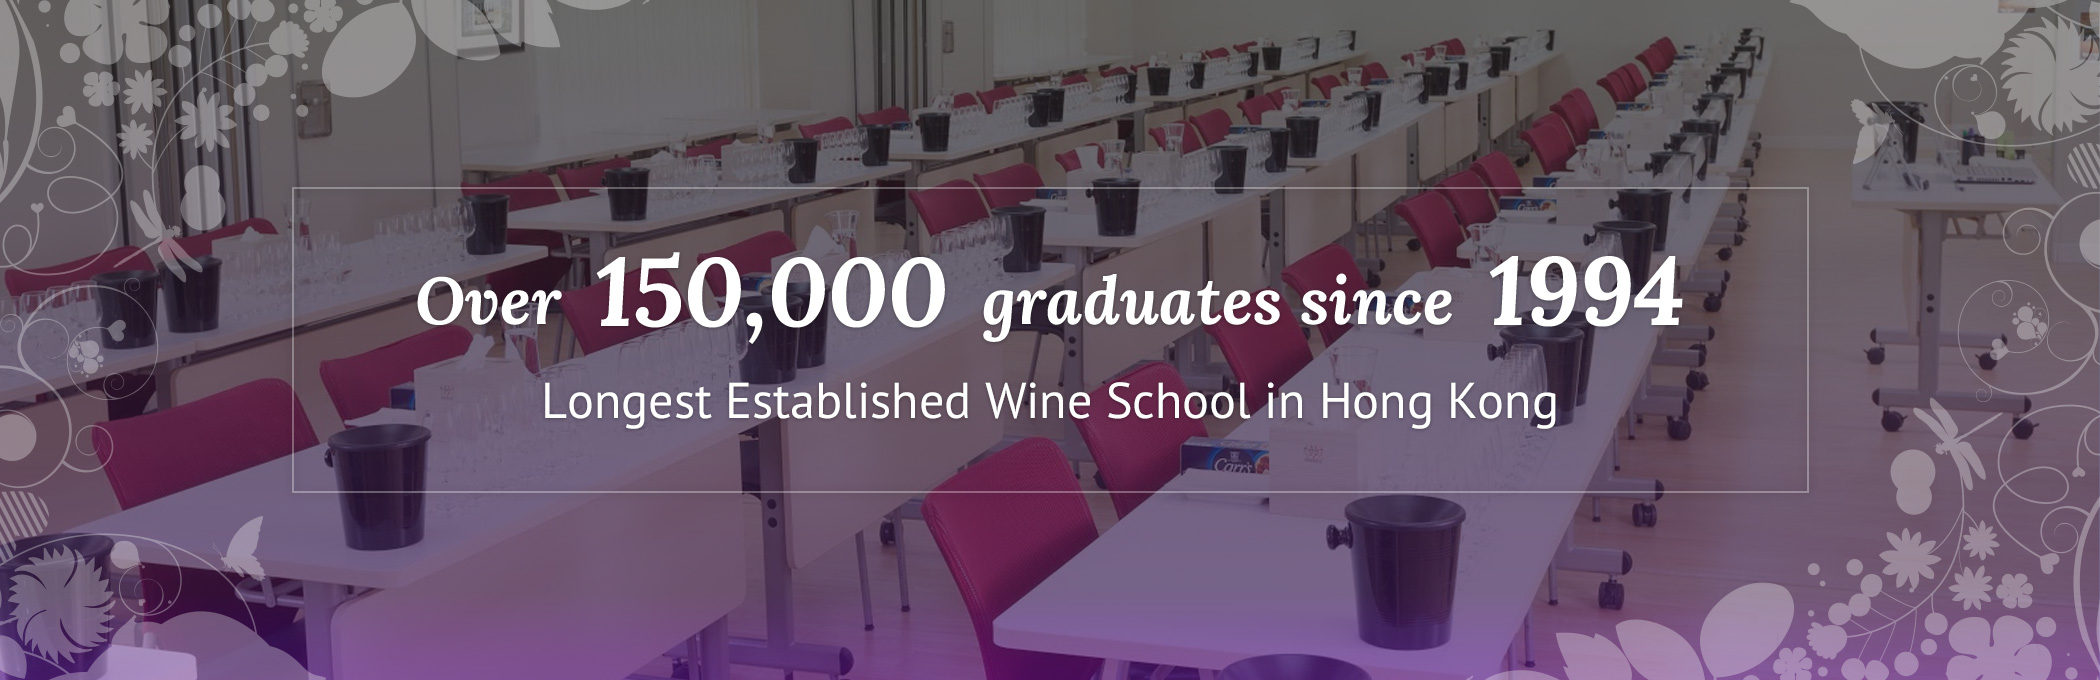 Over 150,000 graduates since 1994